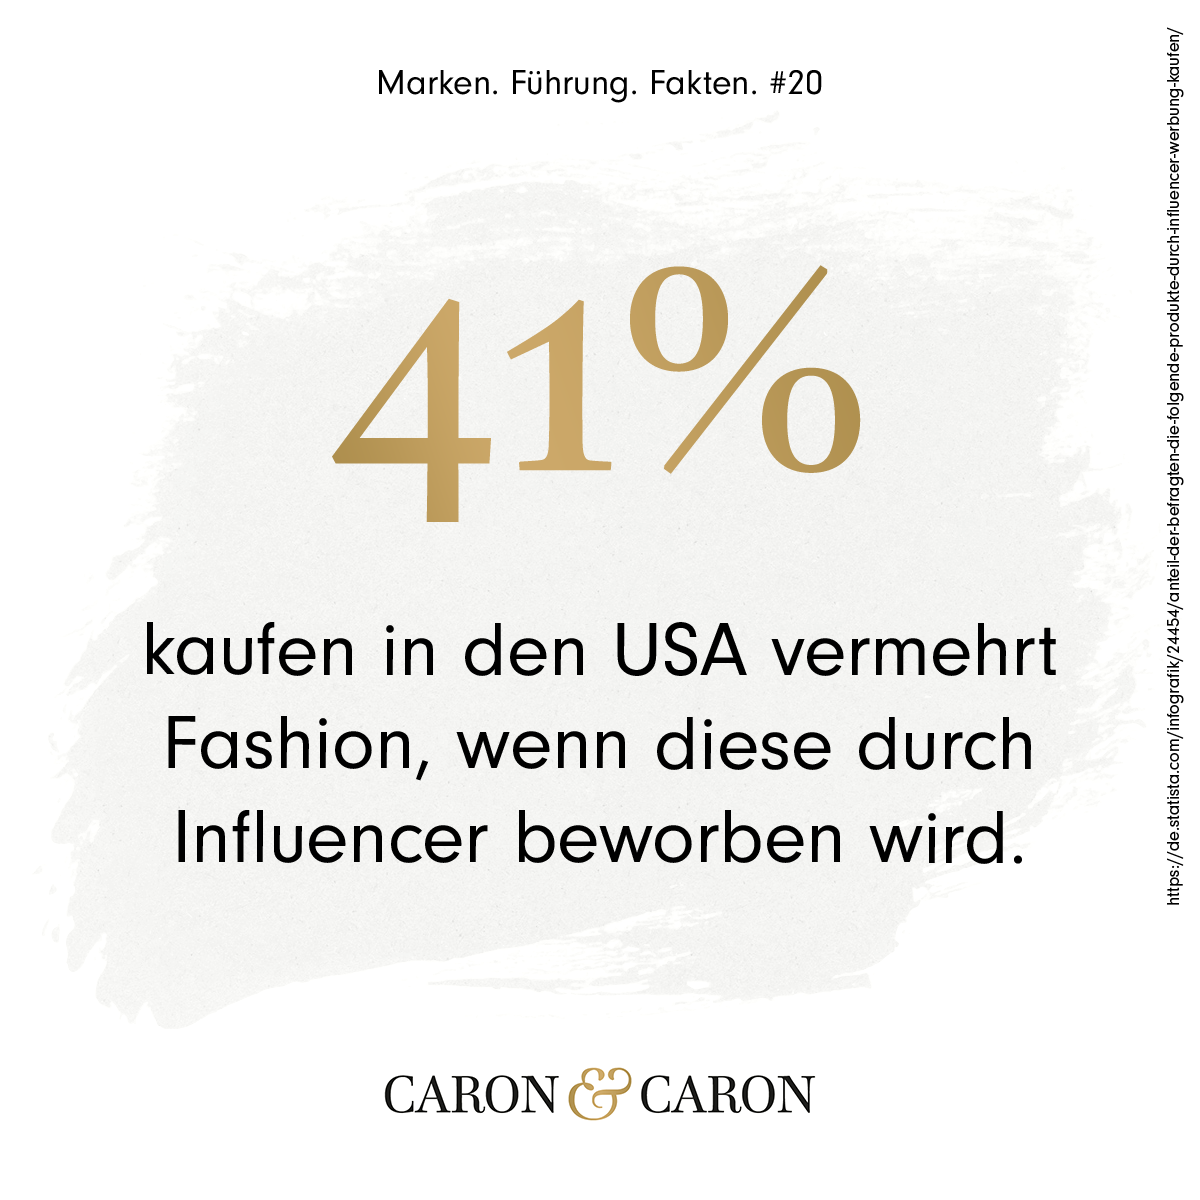 41% kaufen in den USA vermehrt Fashionartikel, wenn diese durch Influencer beworben wird